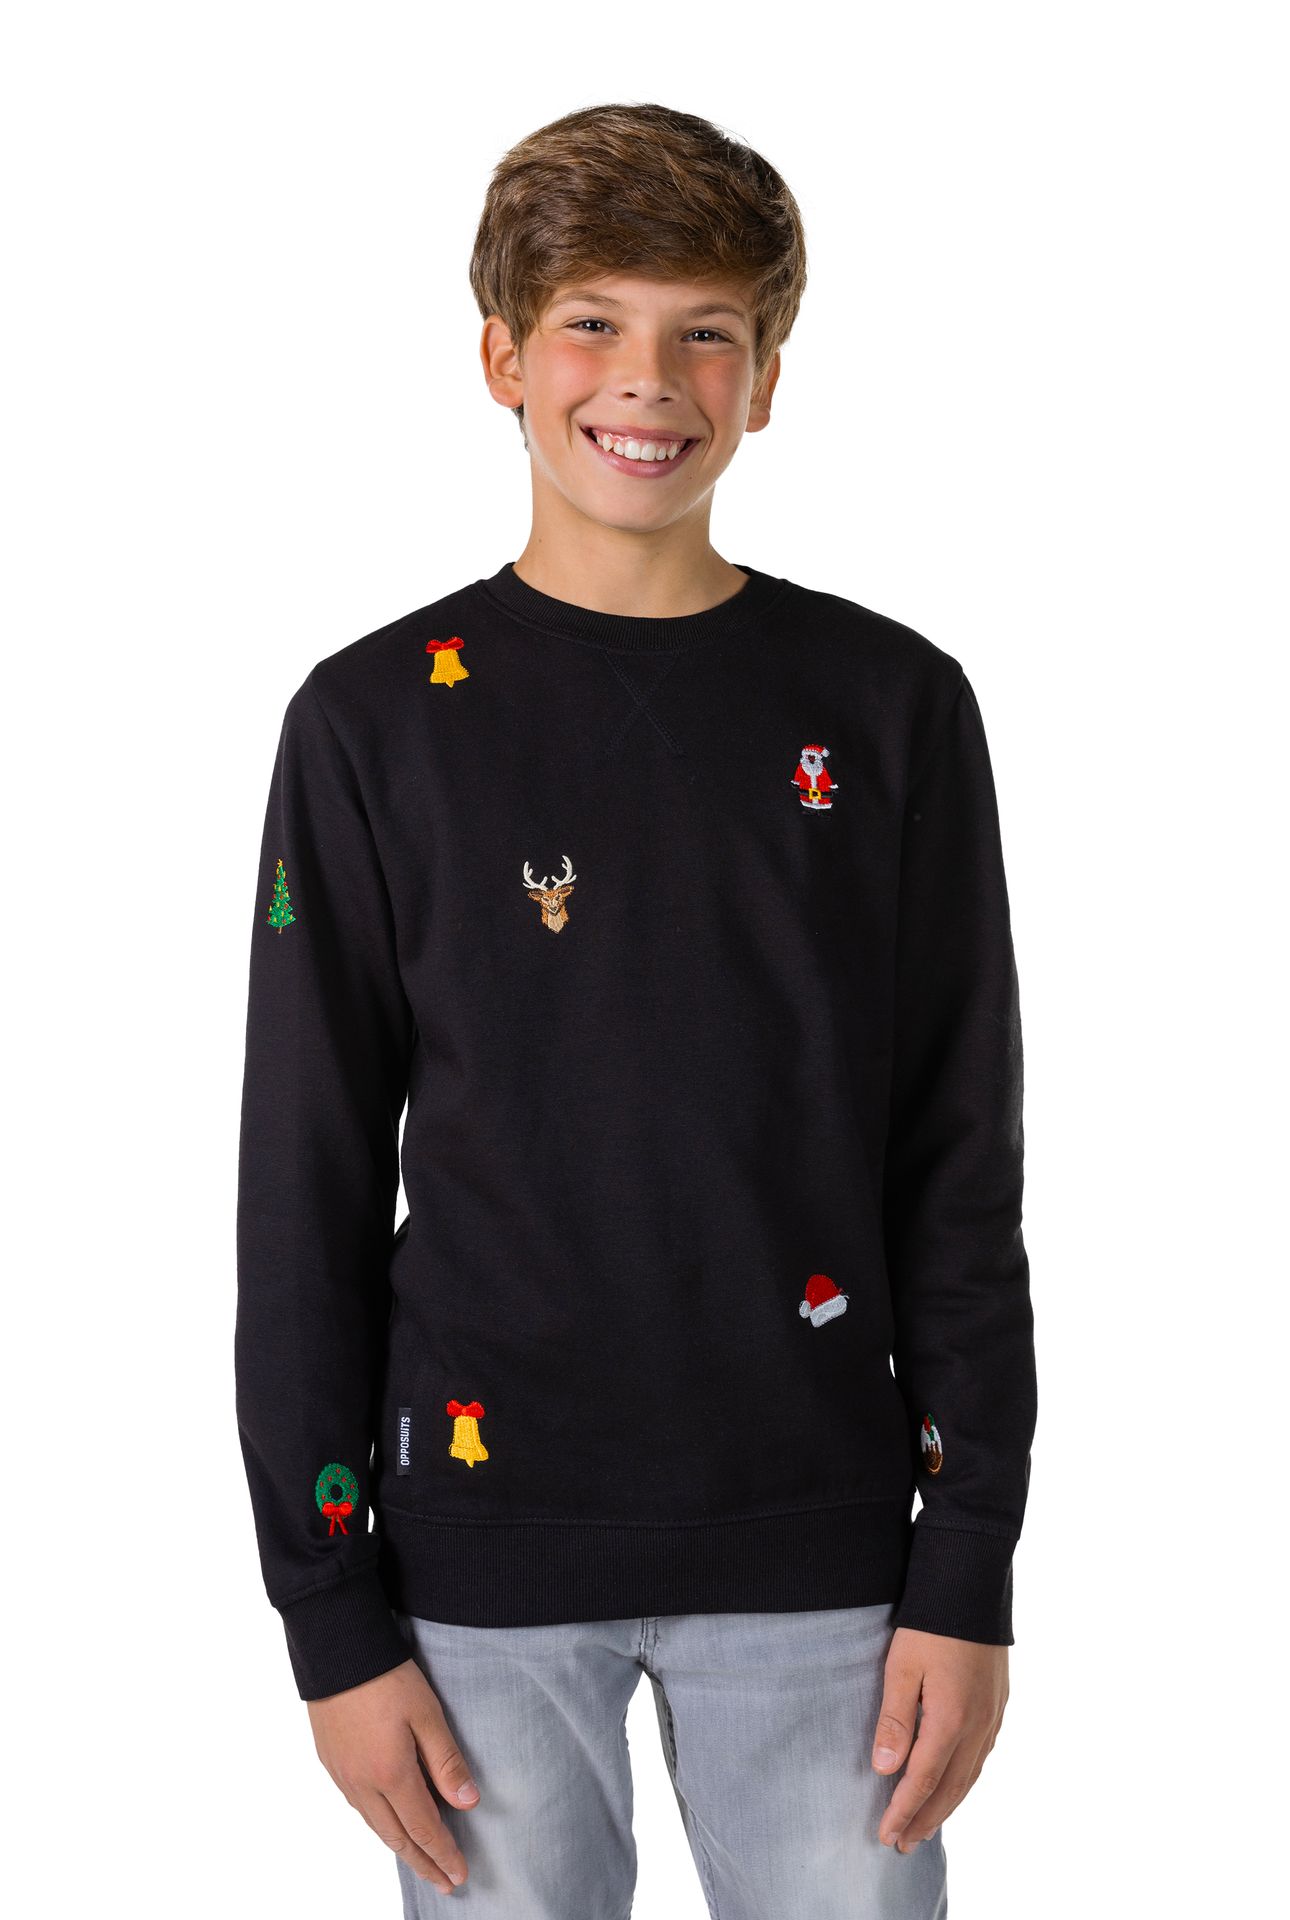 Opposuits Kerstmis - Black Sweater Tiener Jongens